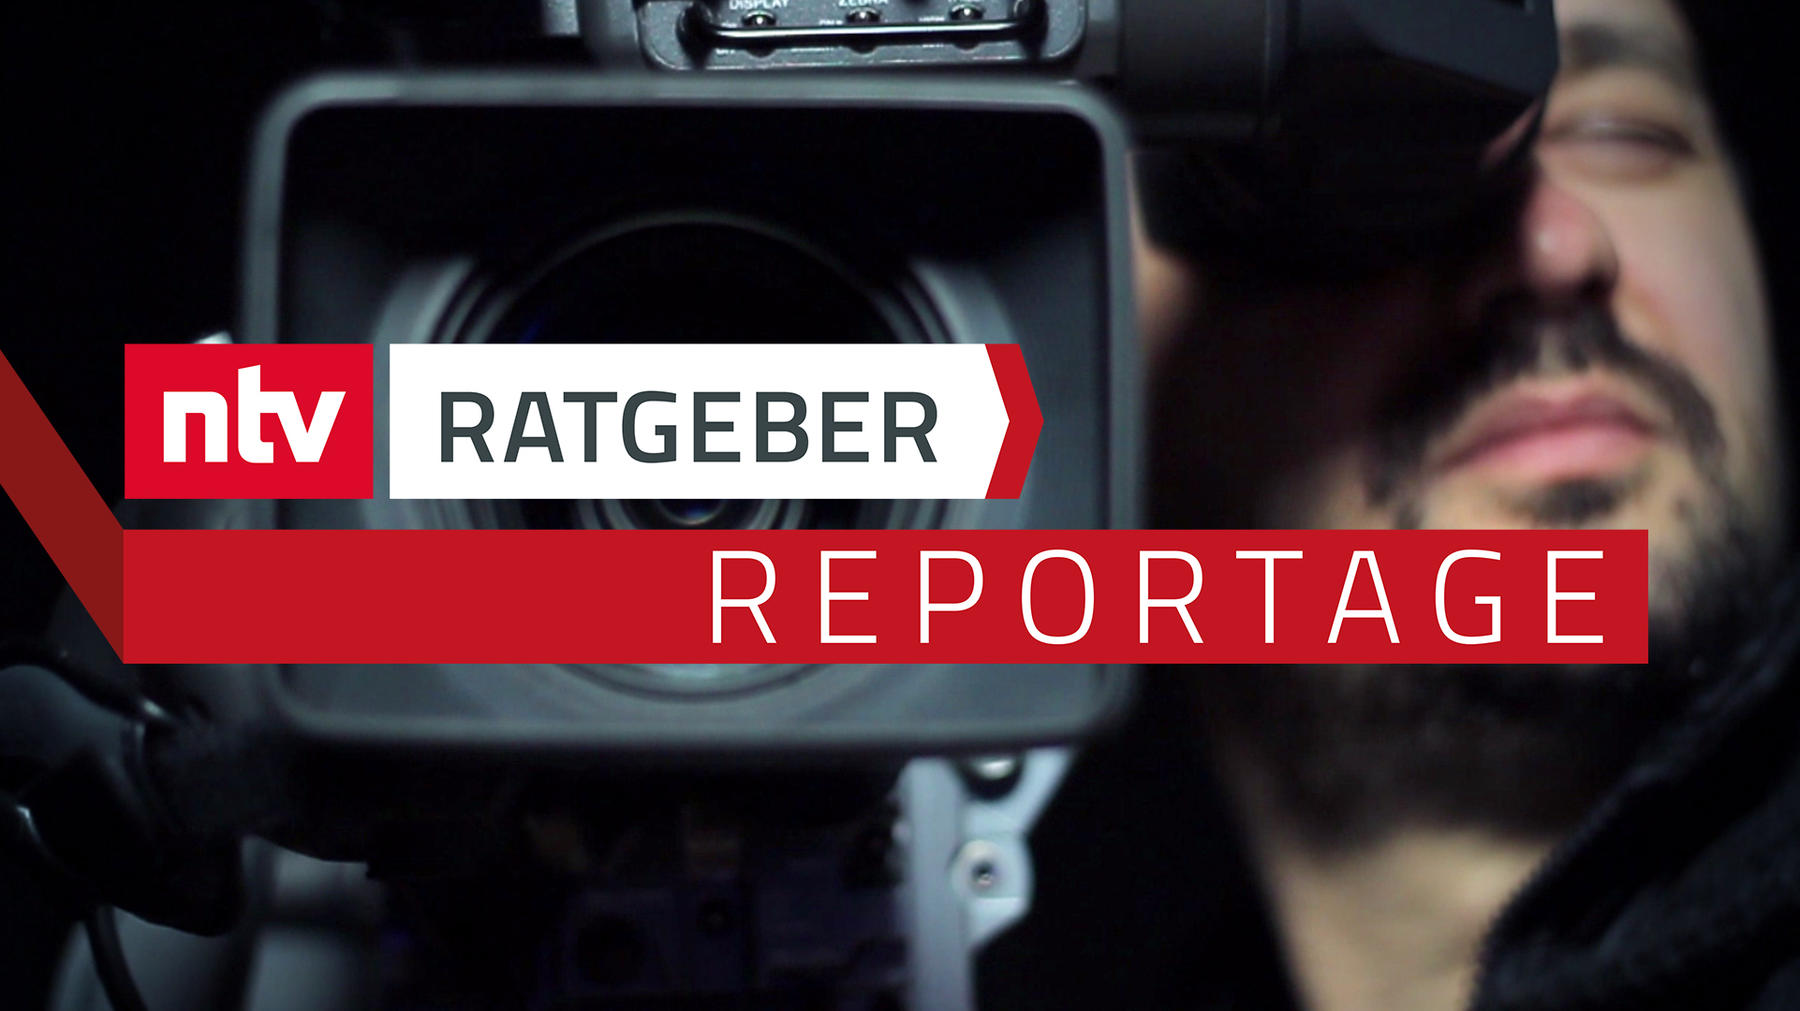 Ratgeber - Reportage